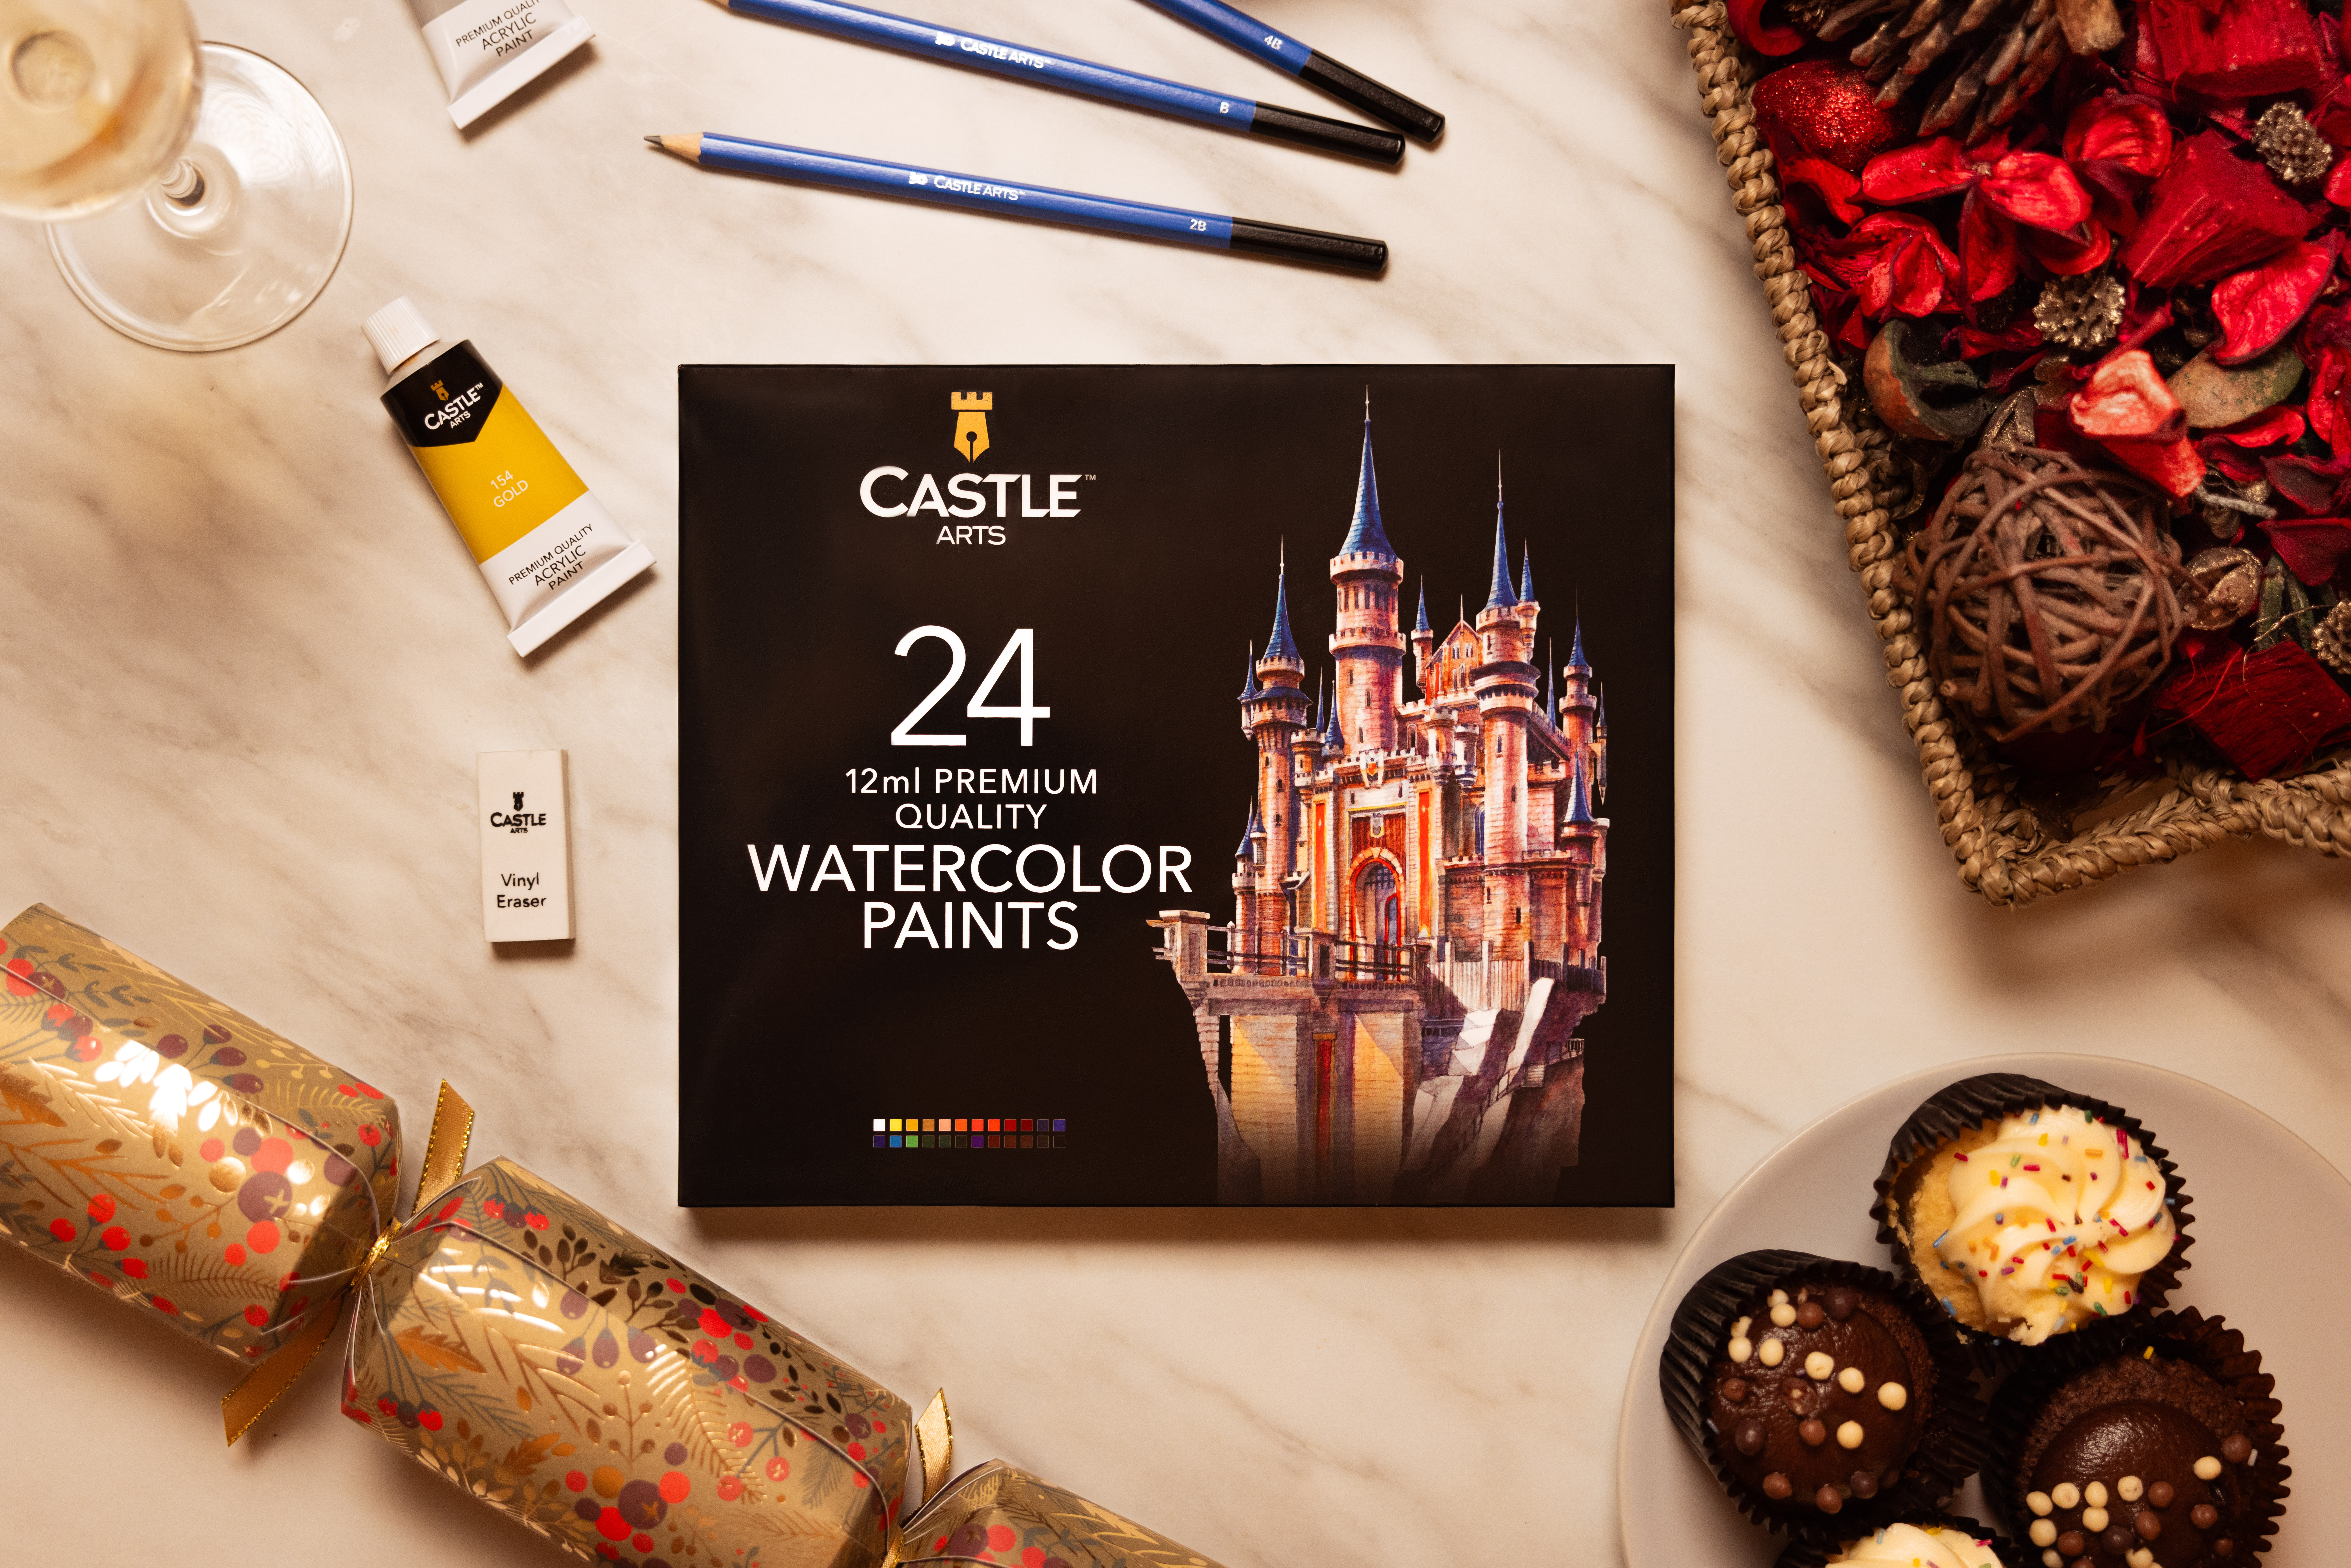 Castle Arts watercolour paints displayed against a festive backdrop.